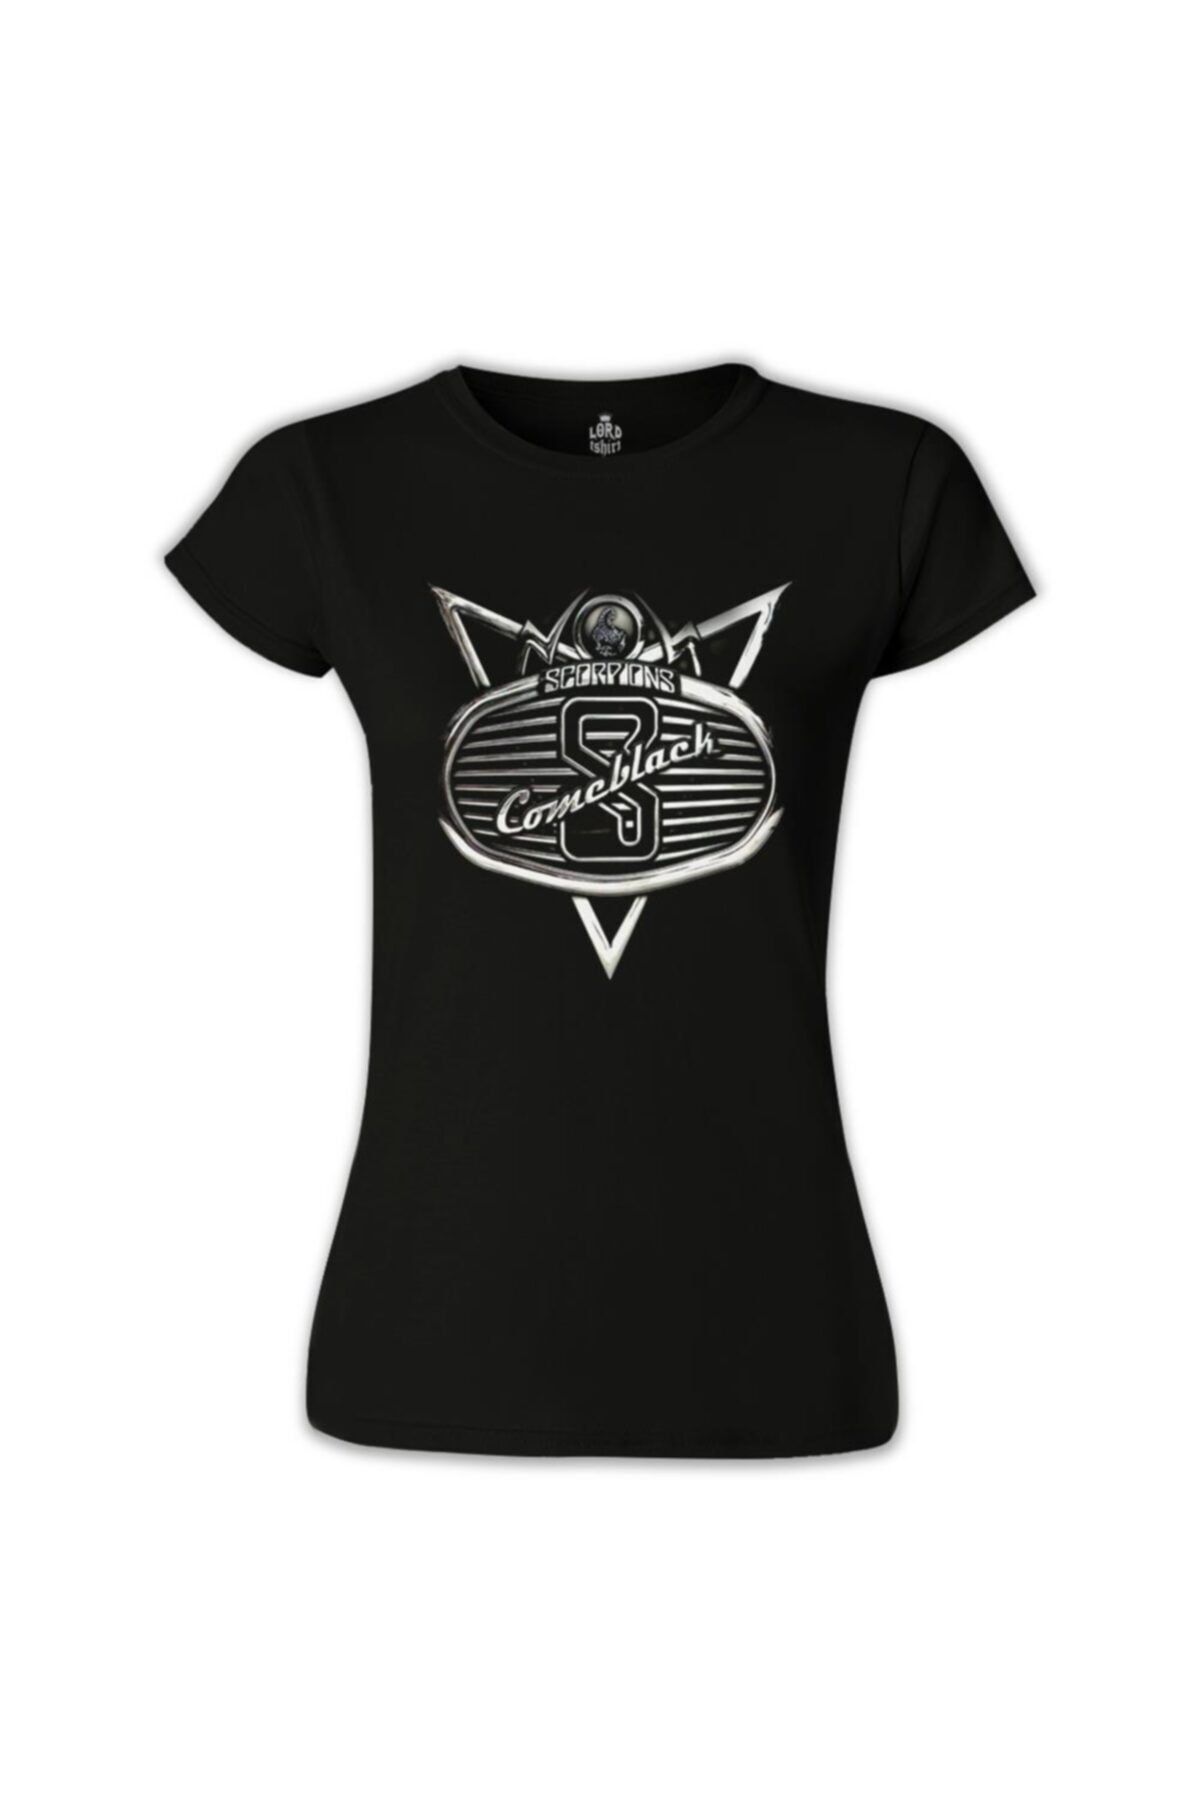 Lord T-Shirt Kadın Siyah Scorpions Tshirt